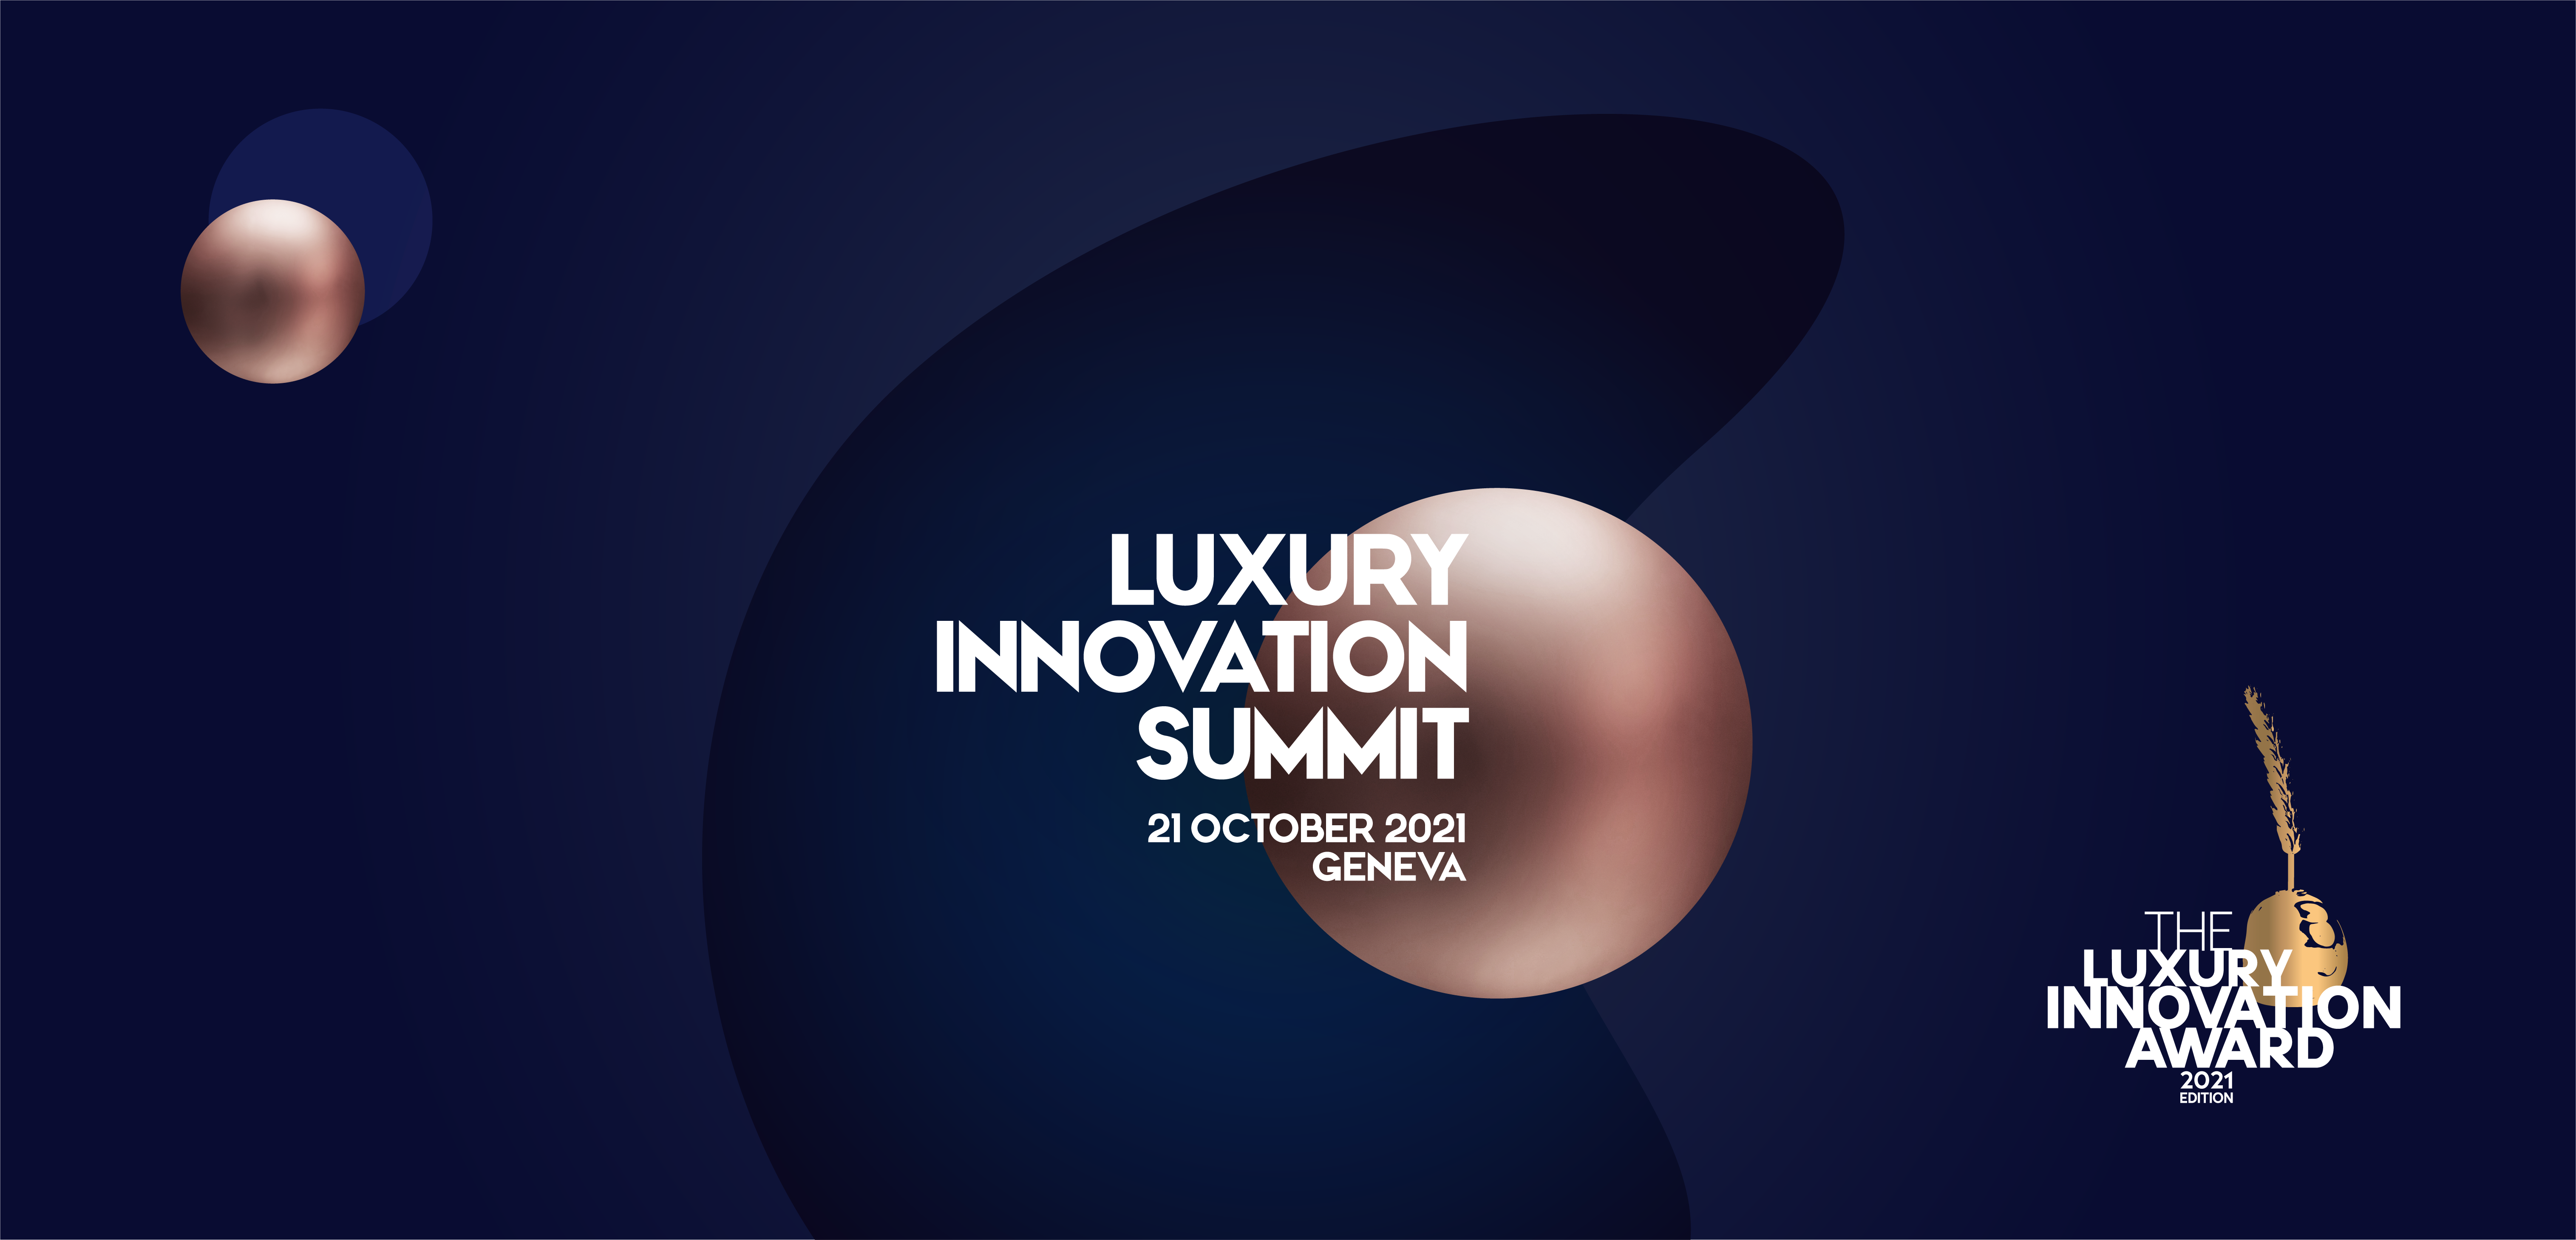 Luxury Innovation Summit, 21 October 2021, Geneva, Switzerland